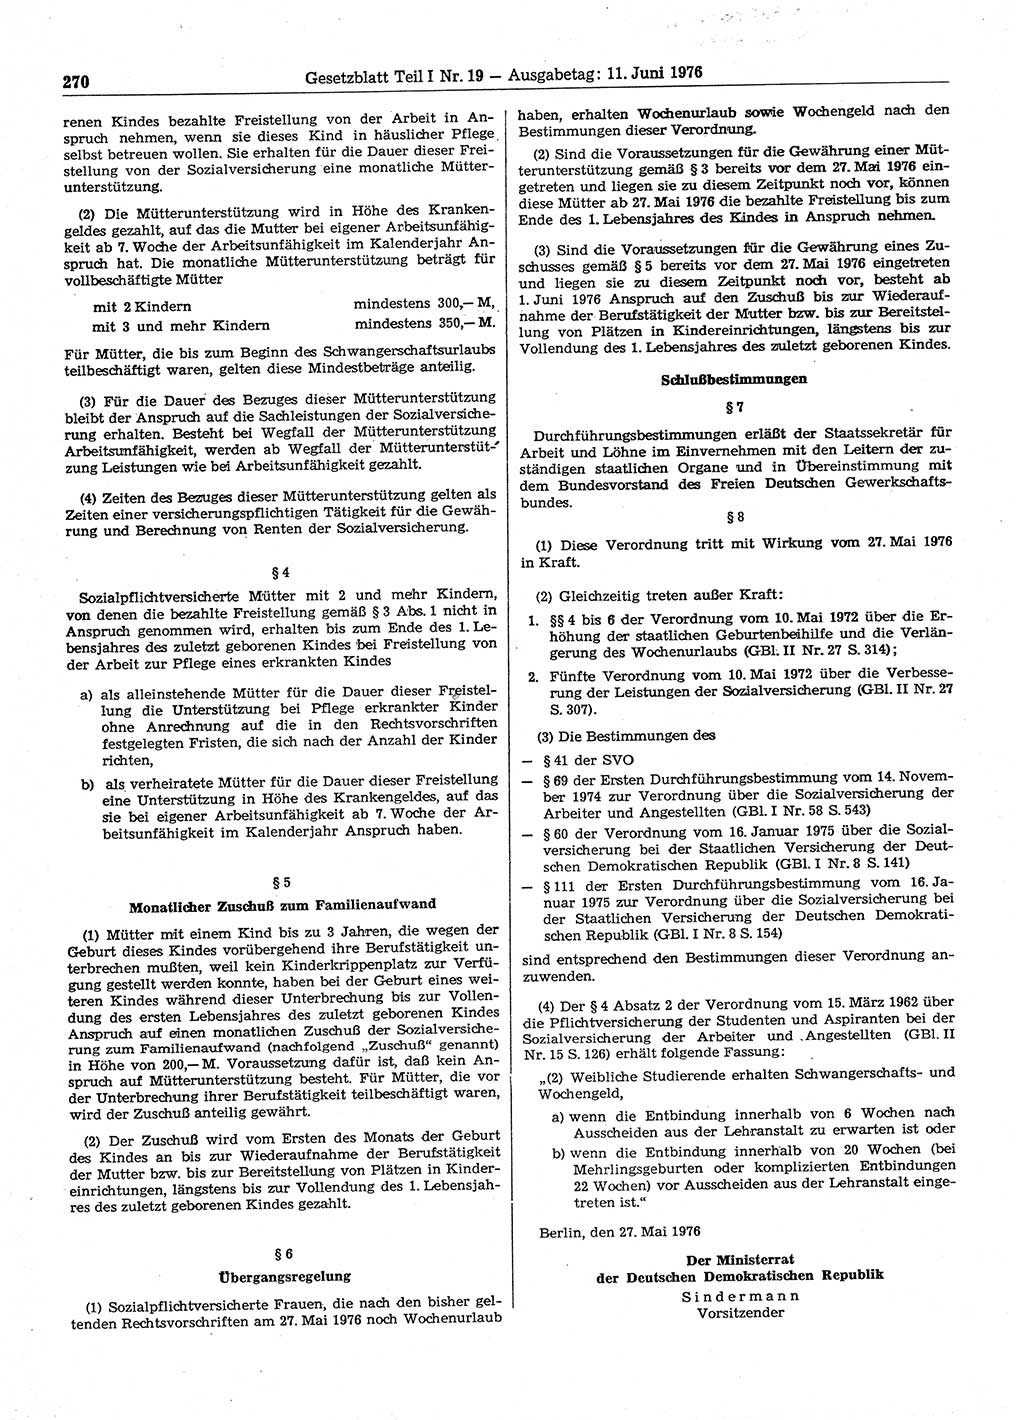 Gesetzblatt (GBl.) der Deutschen Demokratischen Republik (DDR) Teil Ⅰ 1976, Seite 270 (GBl. DDR Ⅰ 1976, S. 270)